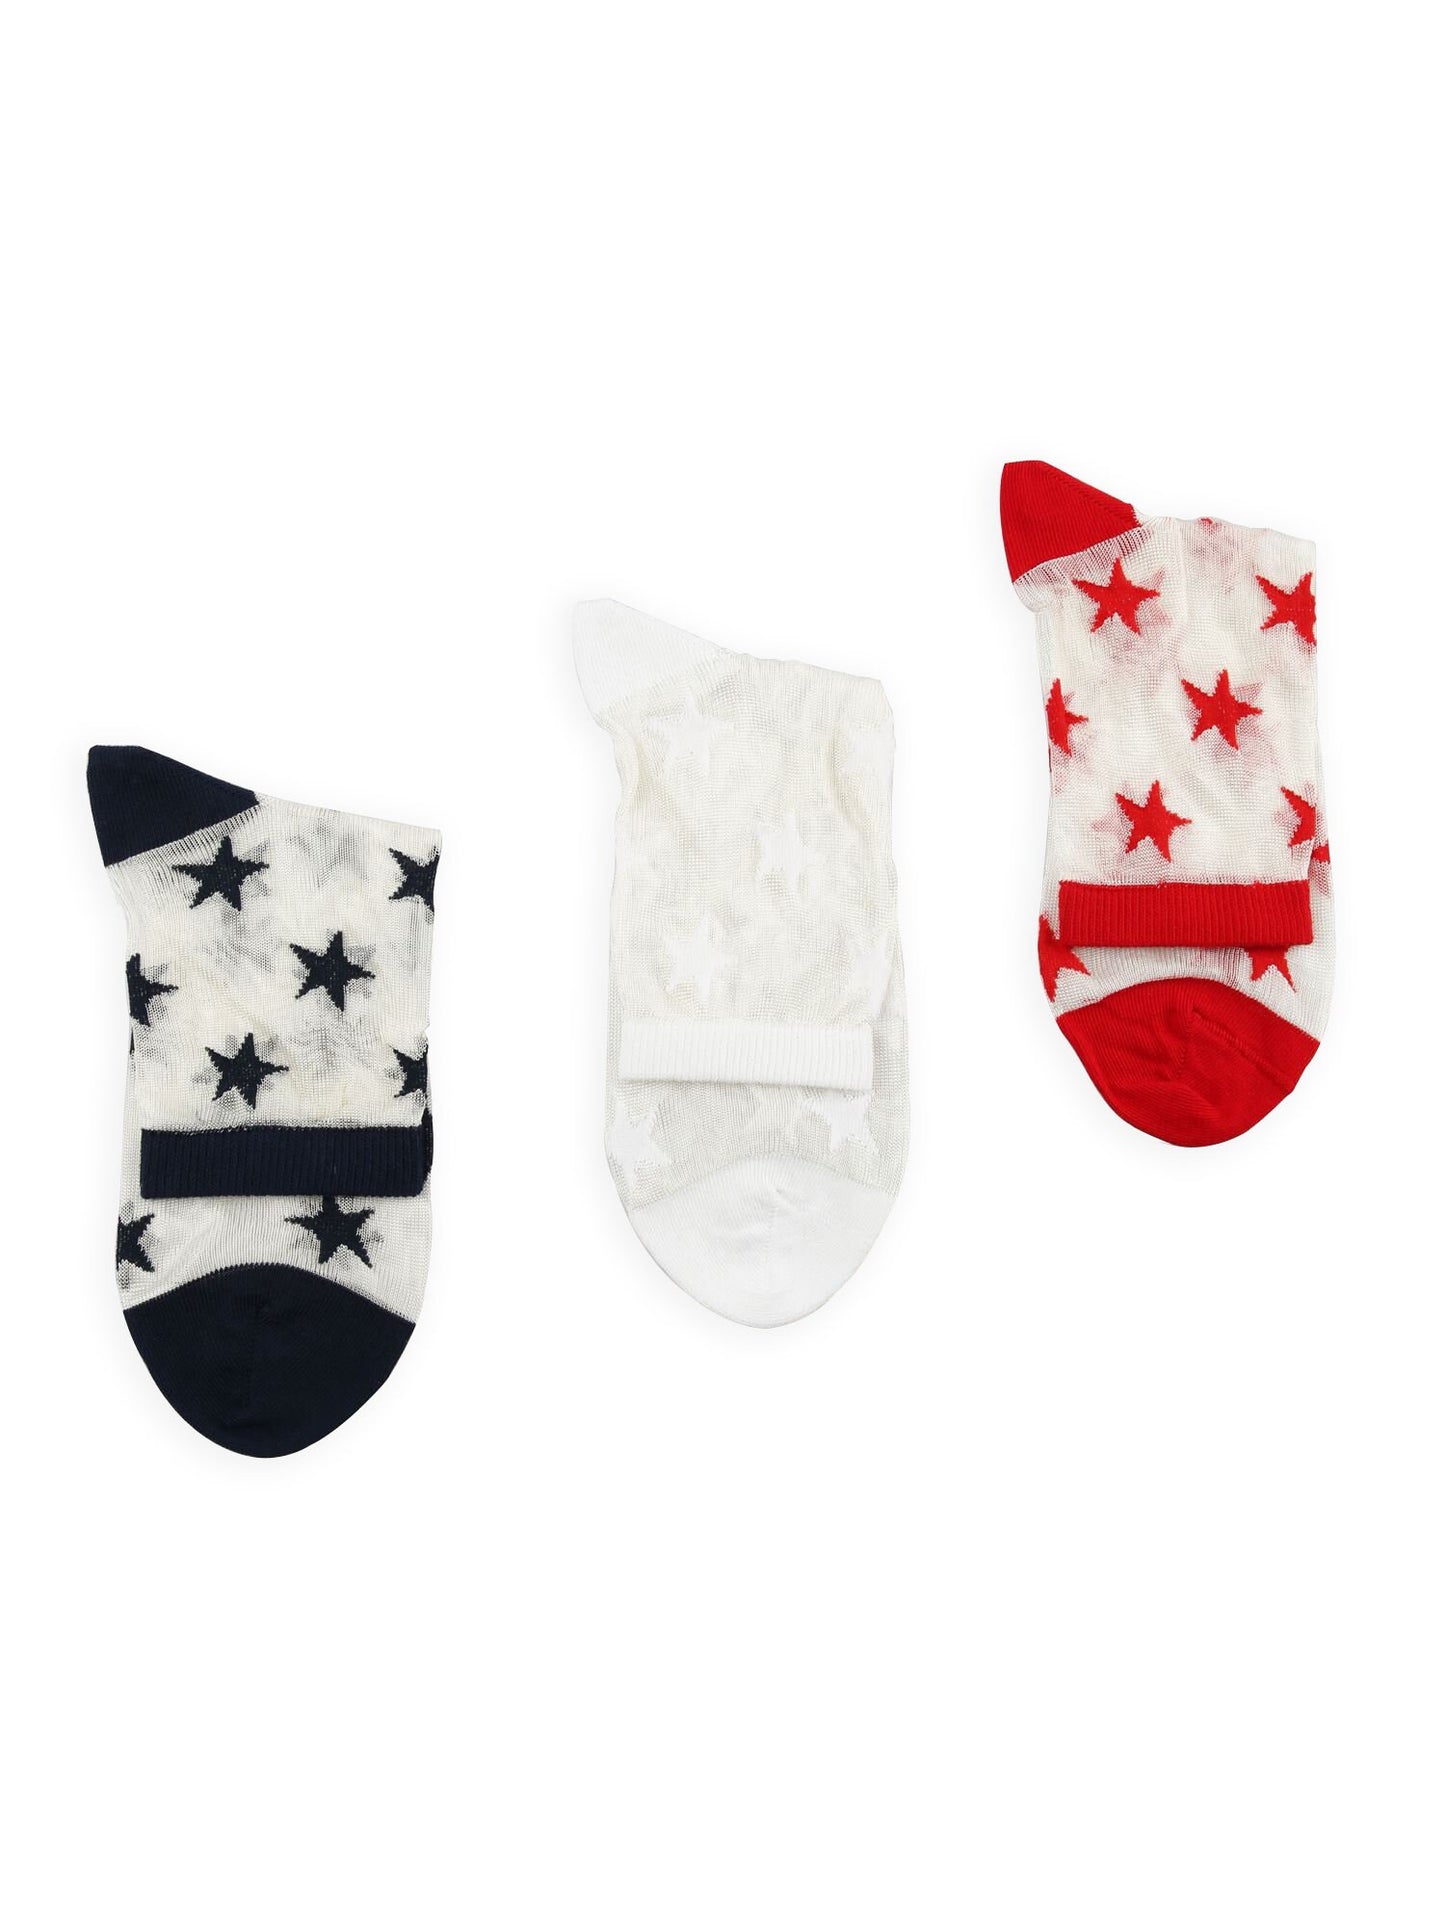 Women's Sheer Stars Socks, White-Red-Dark Blue Mesh Socks, Lace Handmade Gift Socks, Tulle-Transparent Socks, Embroidered Hosiery, Size 6-10